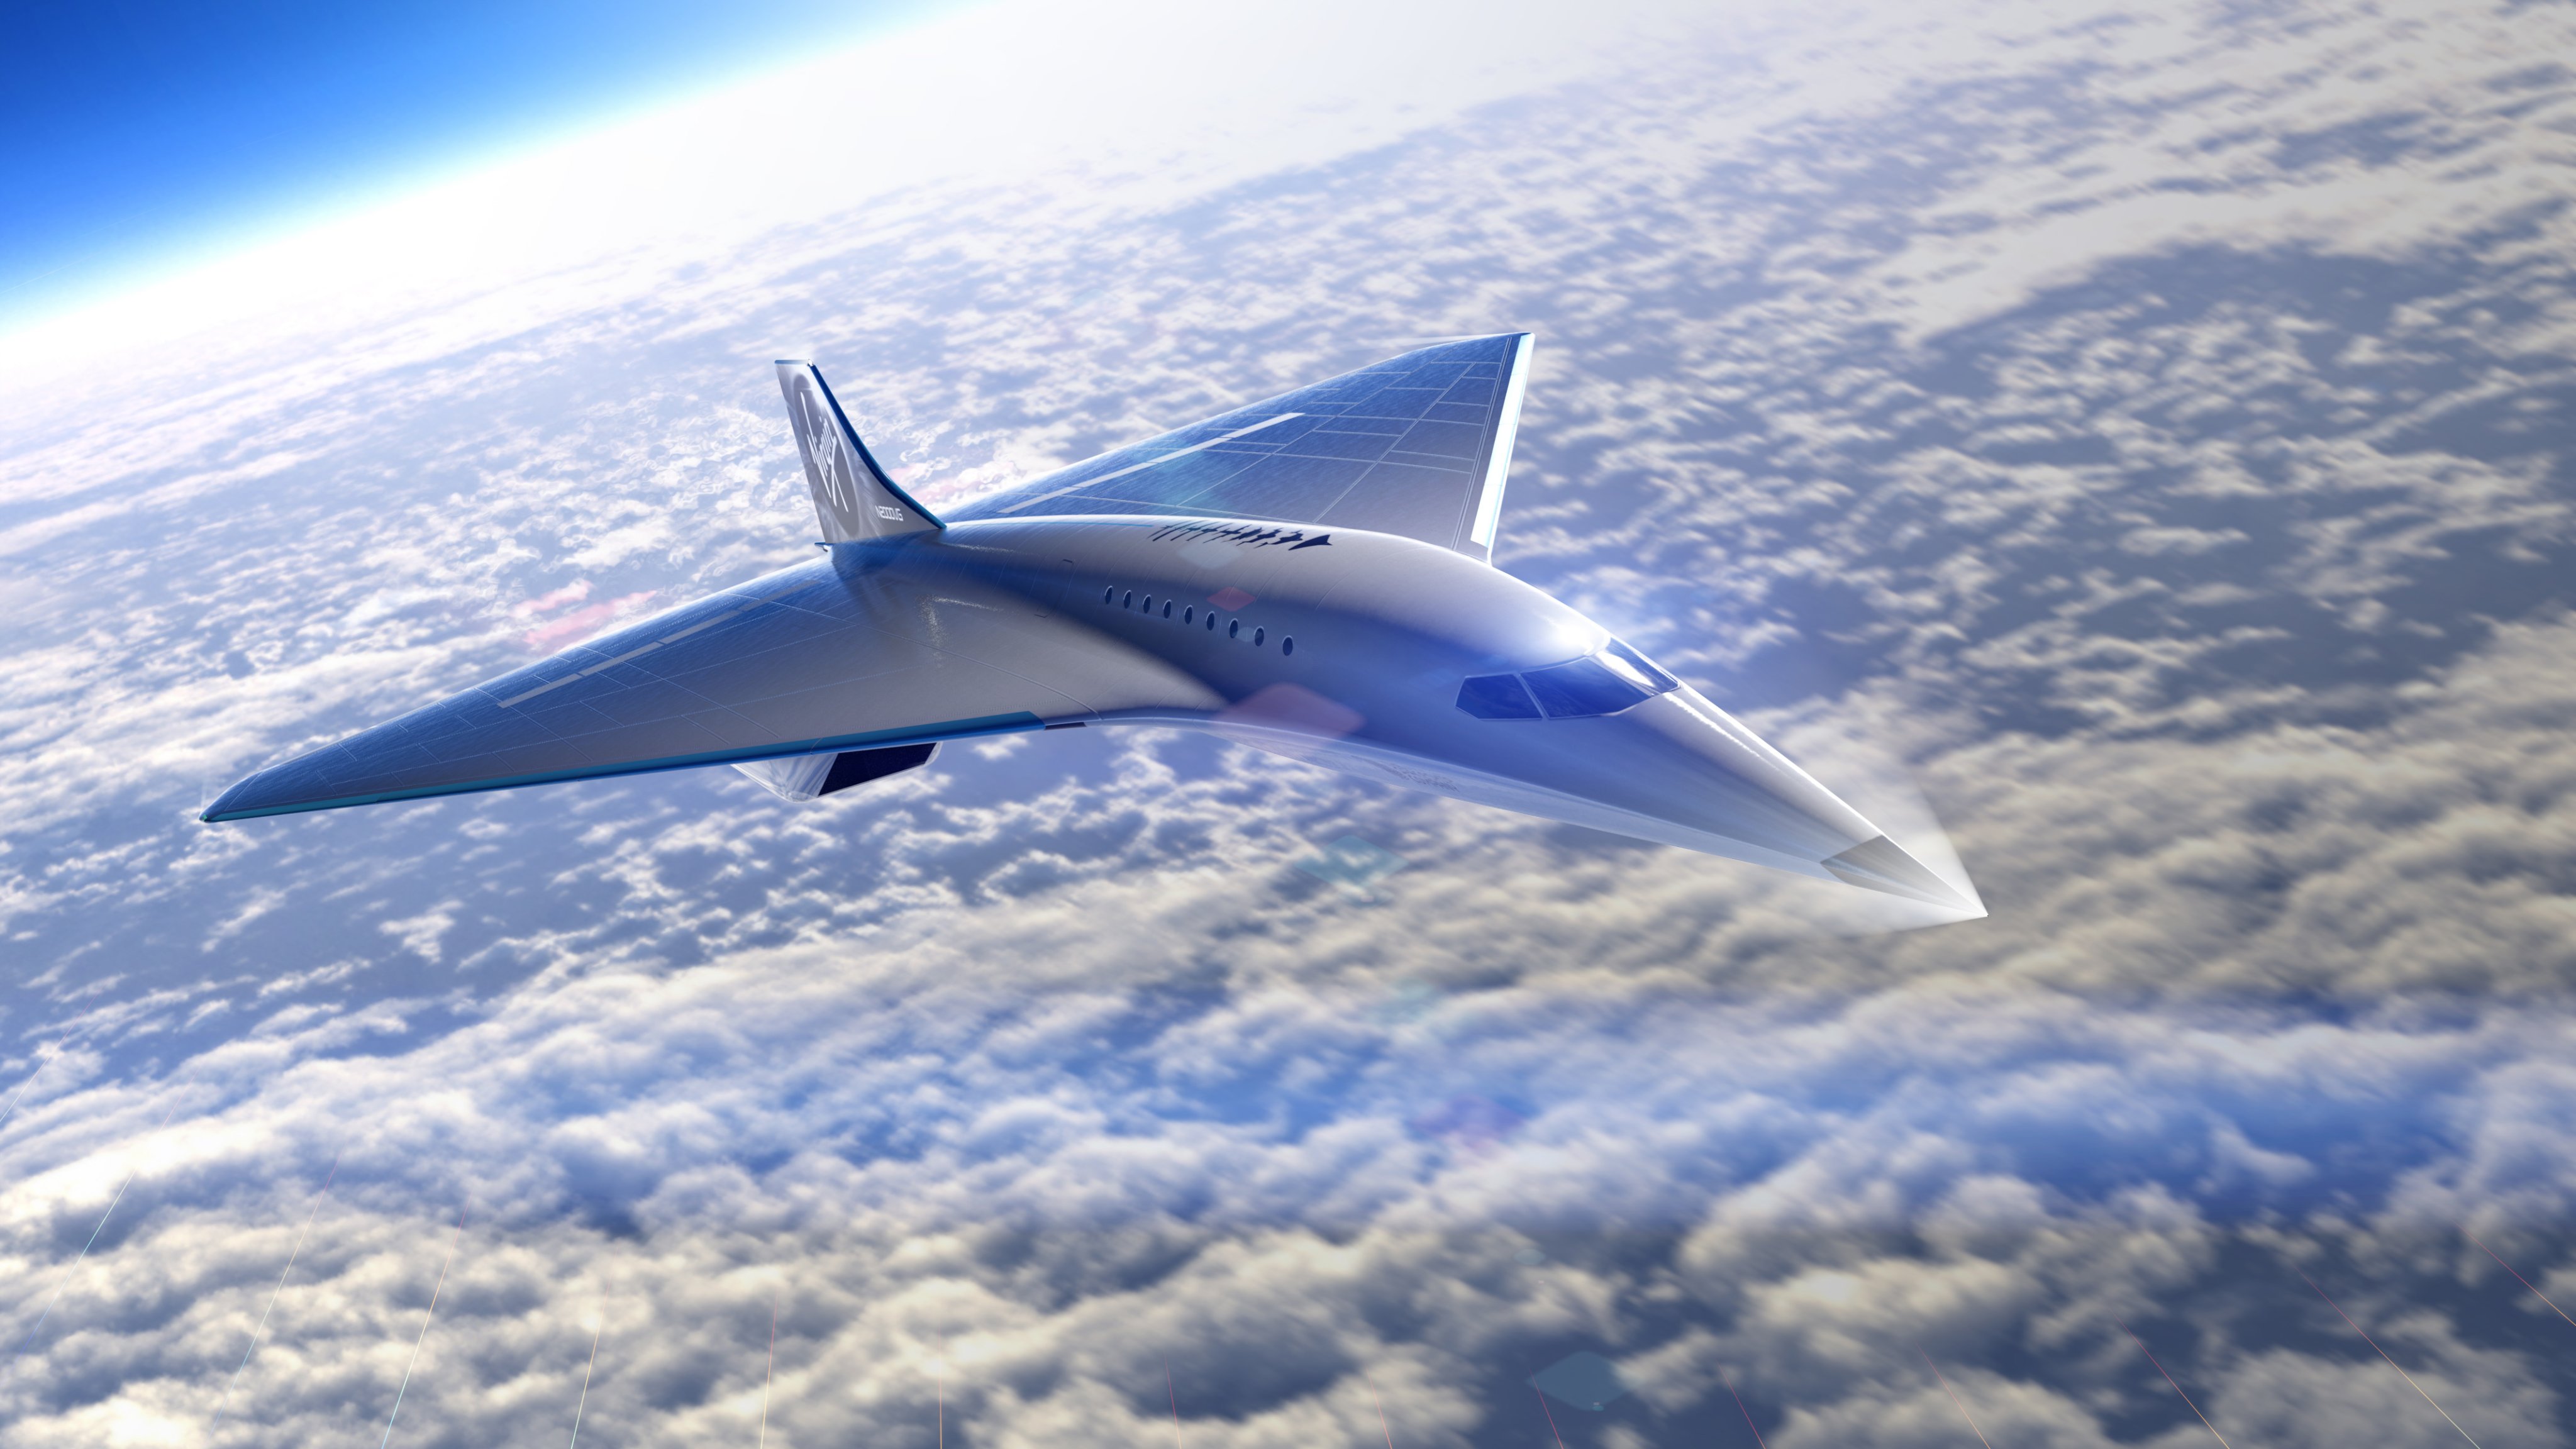 Virgin Galactic dévoile son bilan et son projet d'avion supersonique fonçant à Mach 3